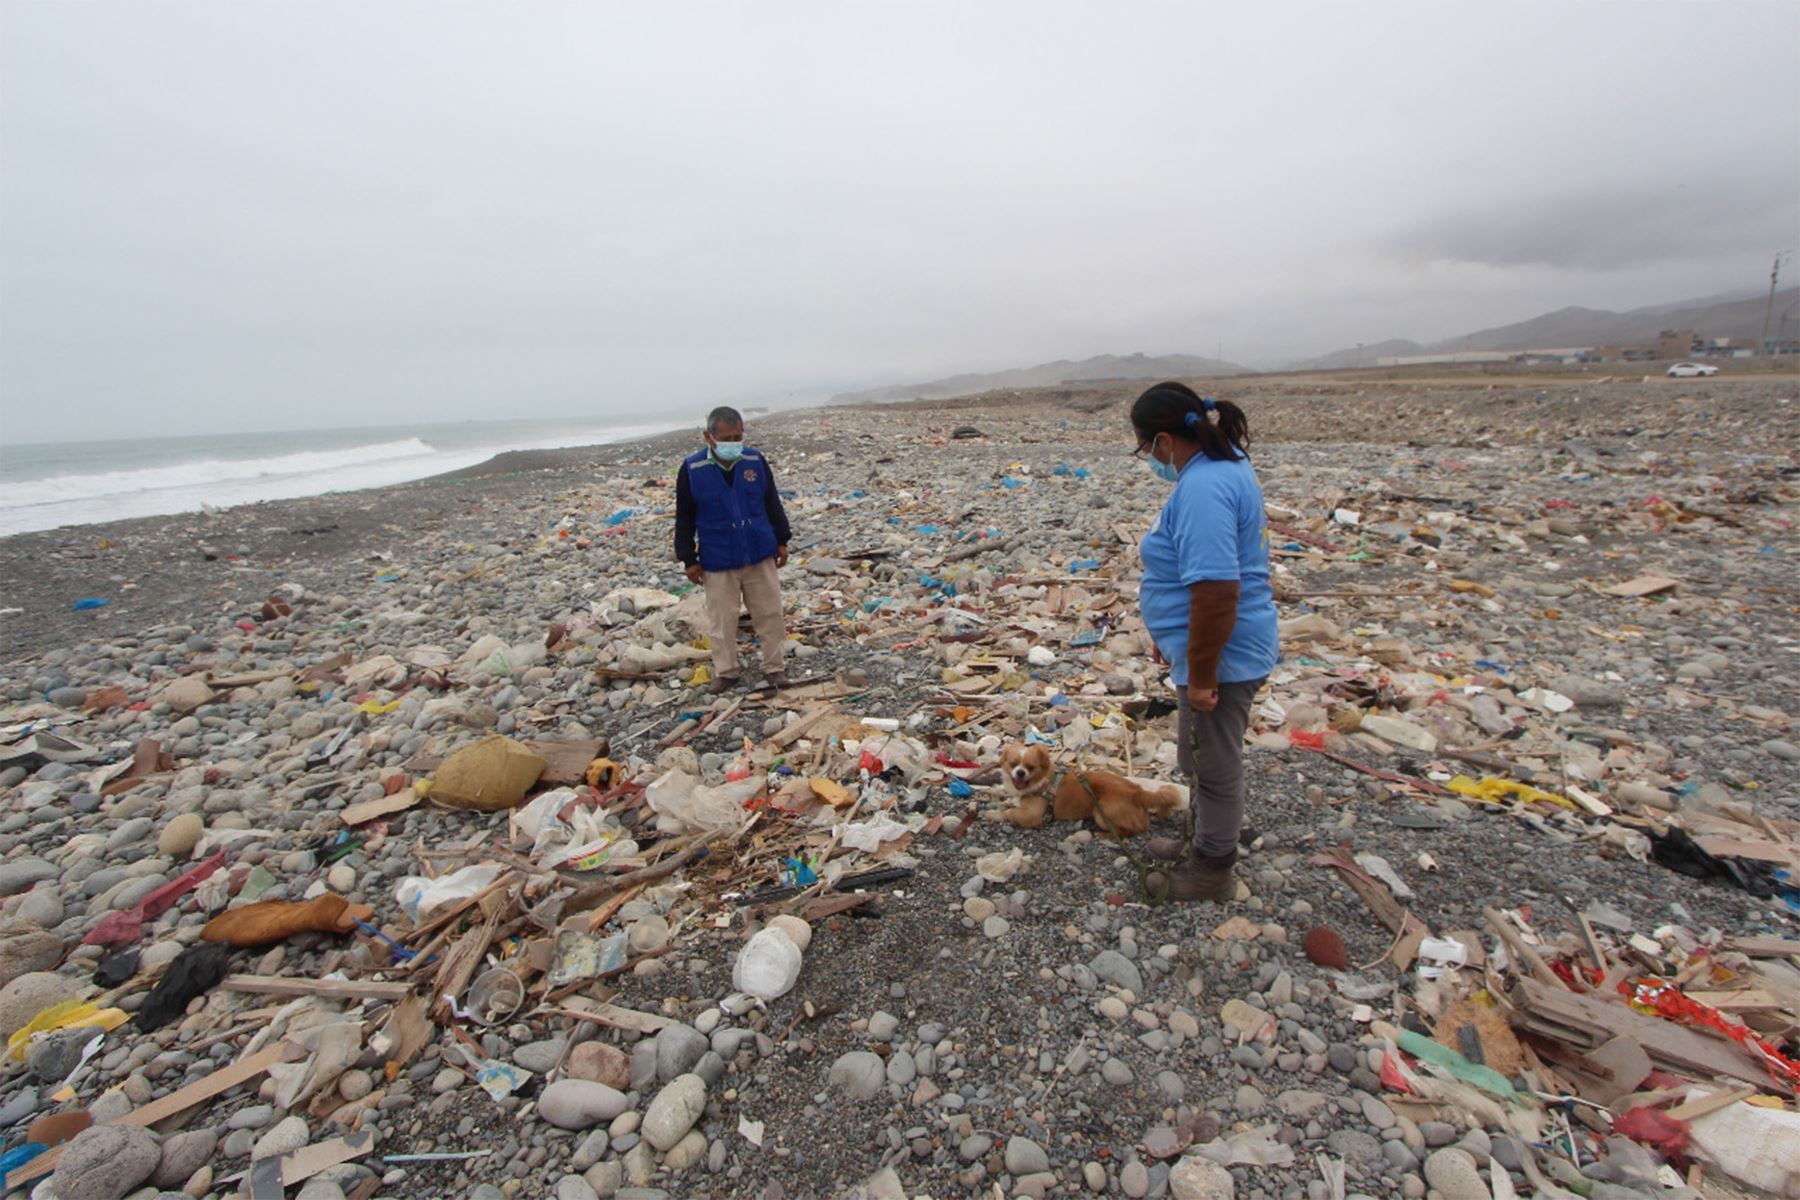 La playa Márquez es considerada la más contaminada del Perú y de América por la cantidad de basura, de diferente tipo, que se encuentra sobre la arena. ANDINA/ Ong. Vida